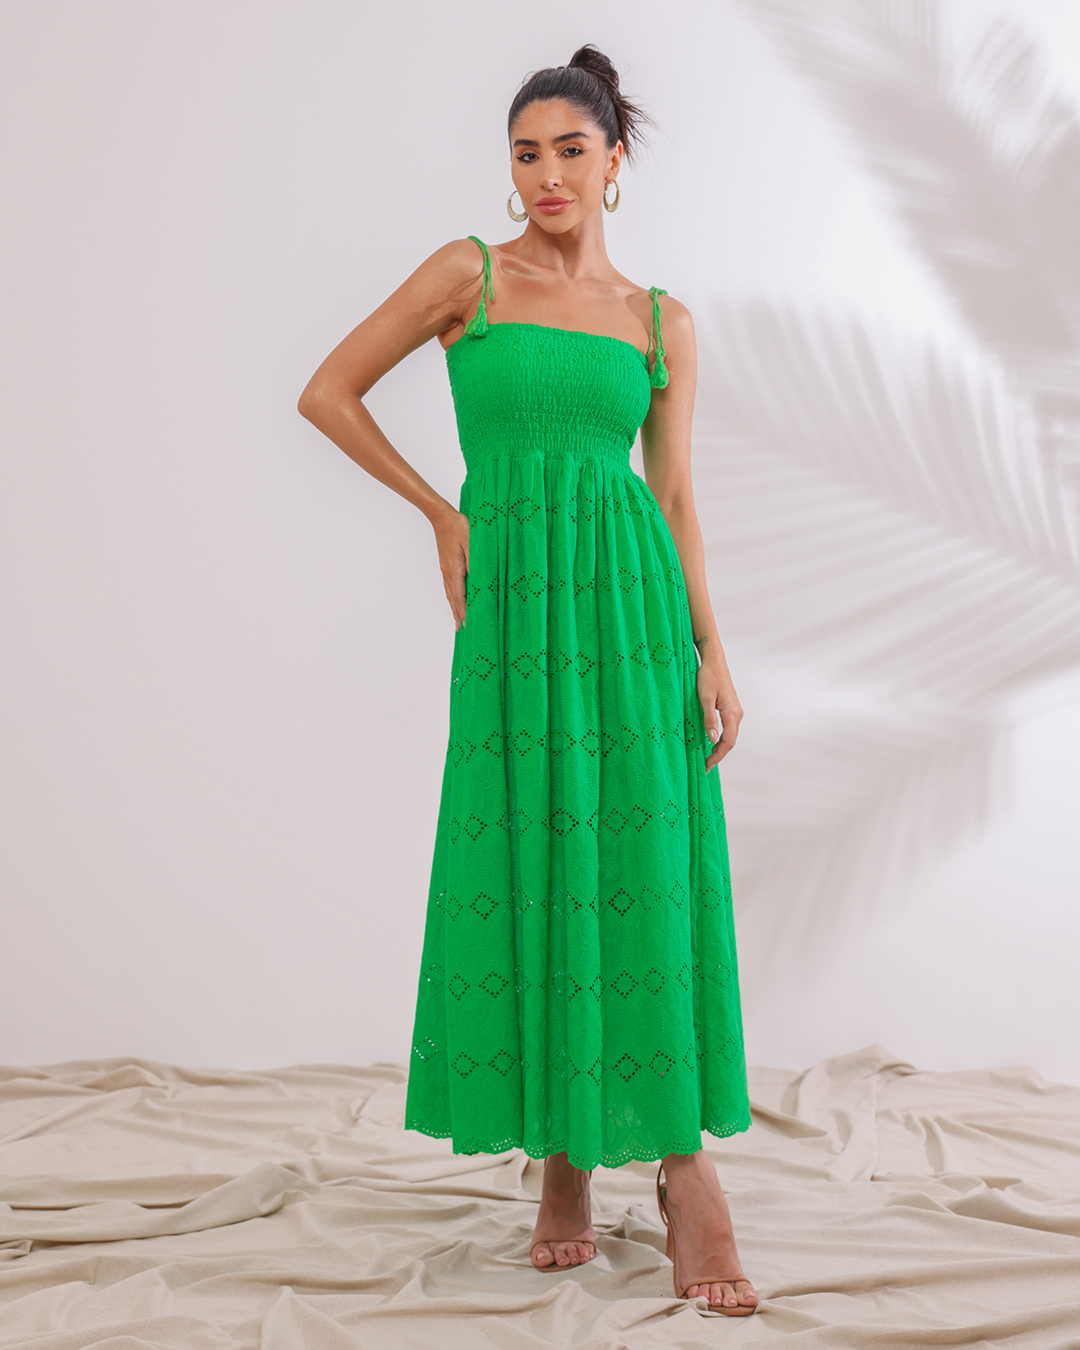 Dot Clothing - Vestido Dot Clothing Longuete Verde - 2125VERDE